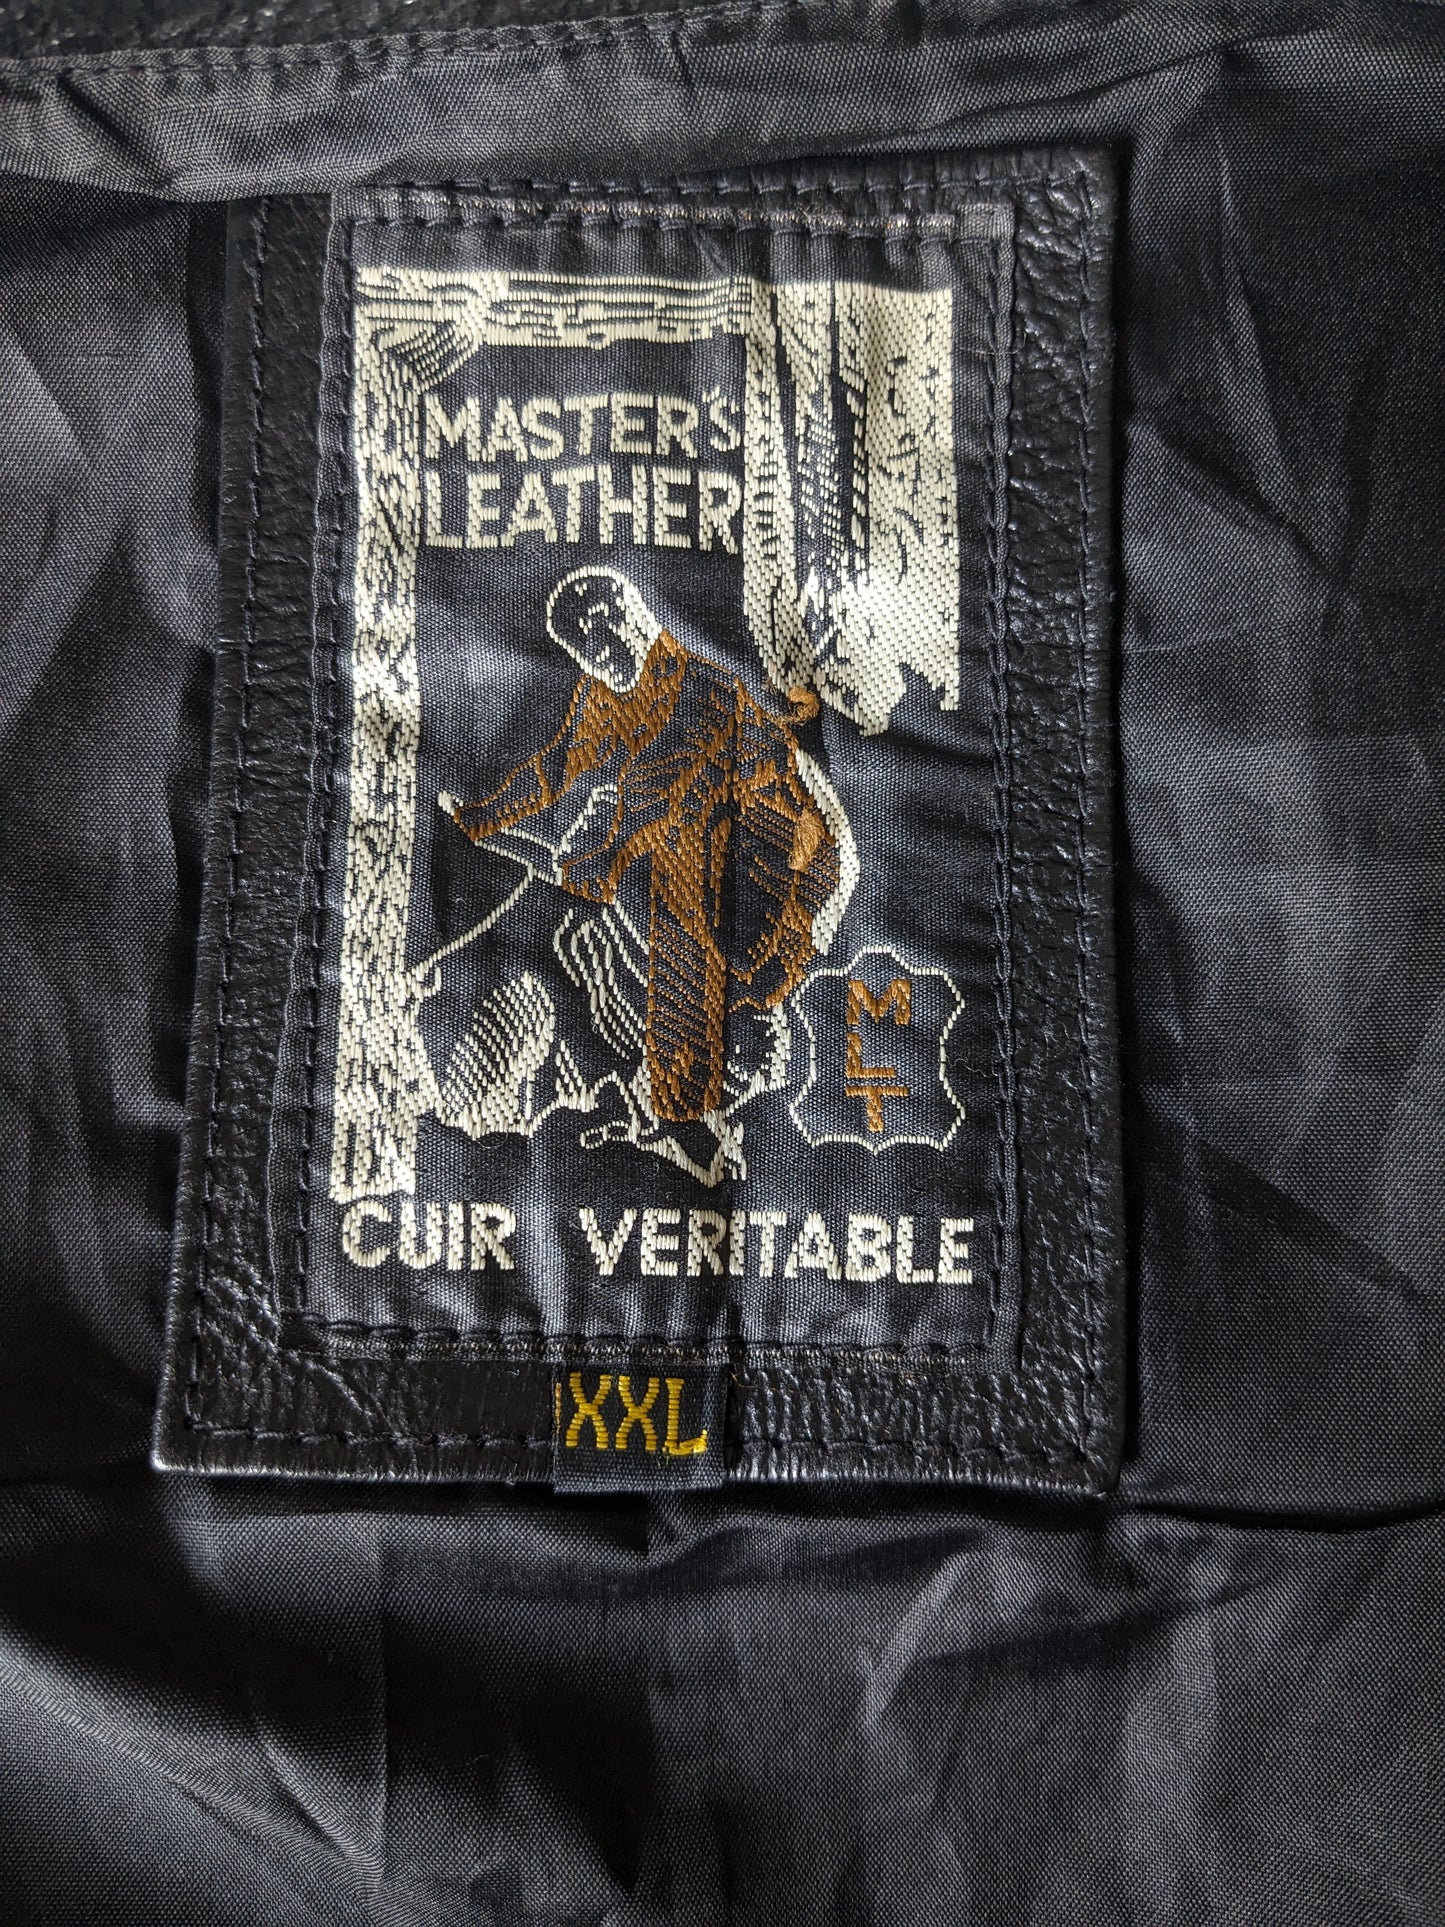 Stoer Master's Leather Leren biker gilet. Dubbelzijdig met veter- & gespapplicaties. Zwart gekleurd. Maat 2XL.